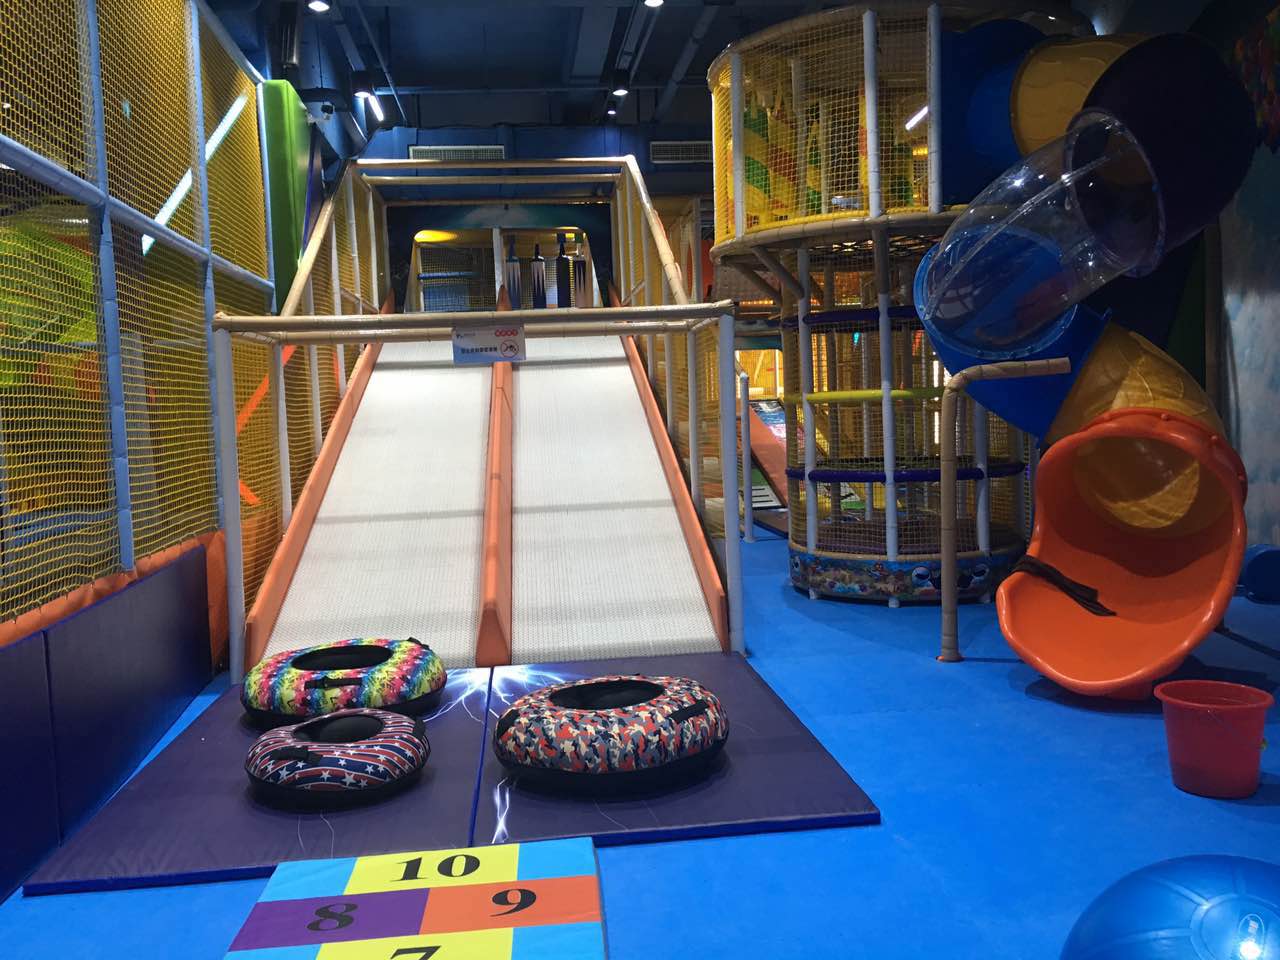 Kids Slide in Soft Playground